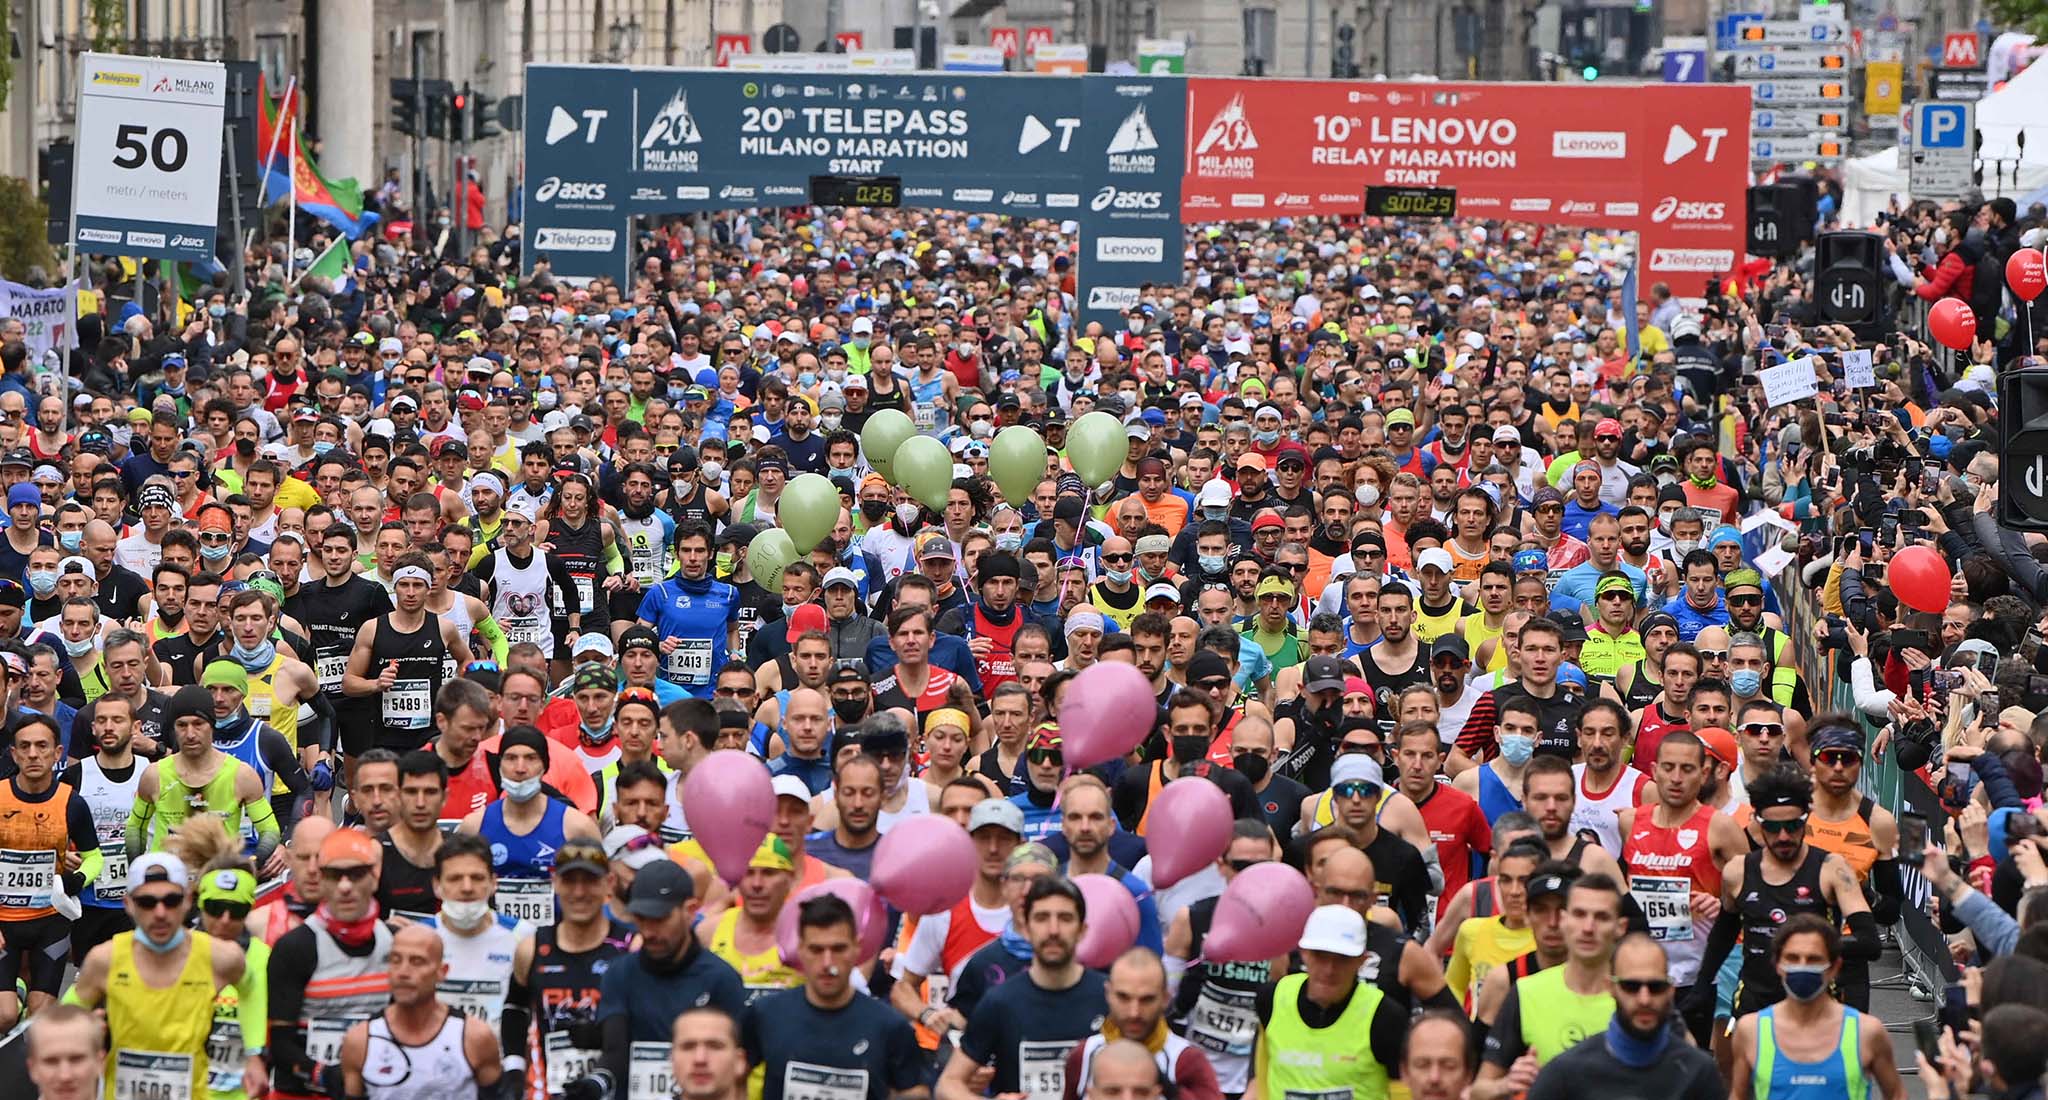 El 20° Telepass Milano Marathon 2022. La capital del running.